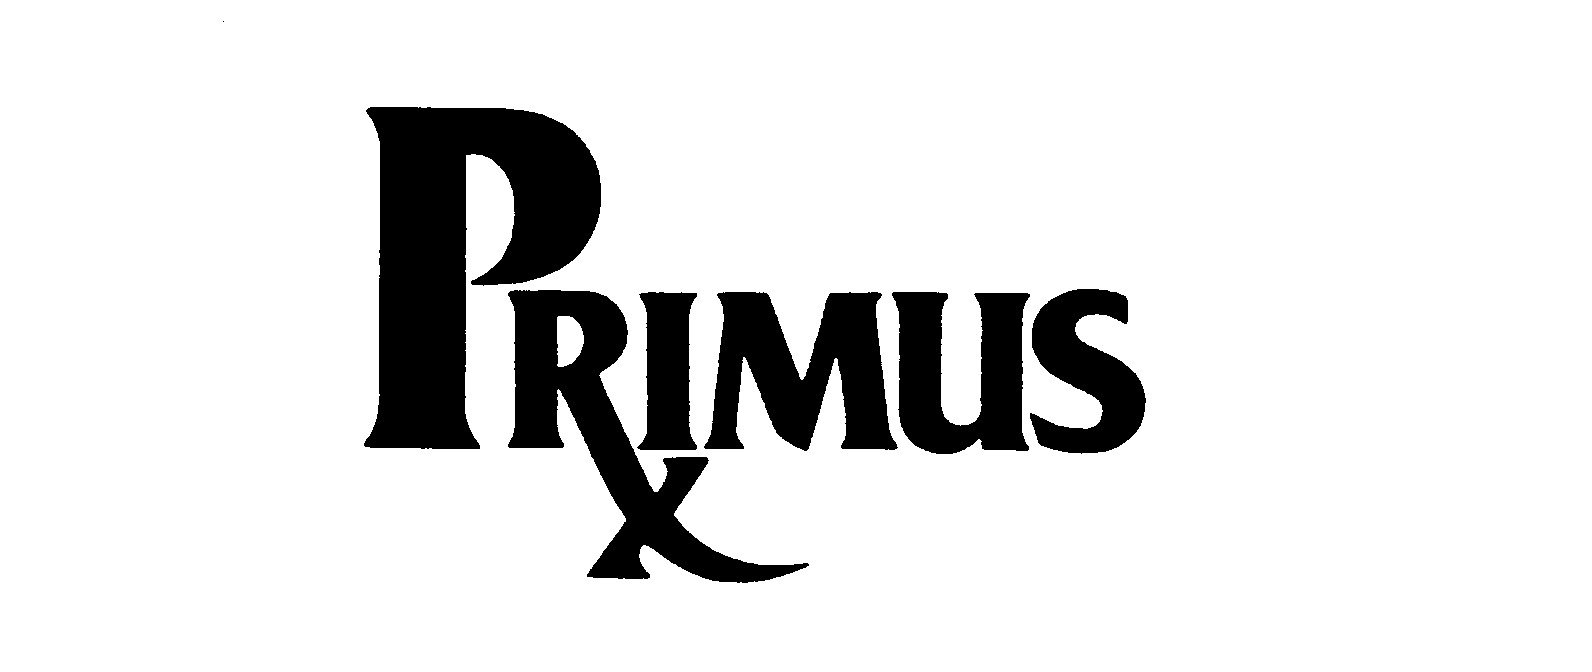  PRIMUS